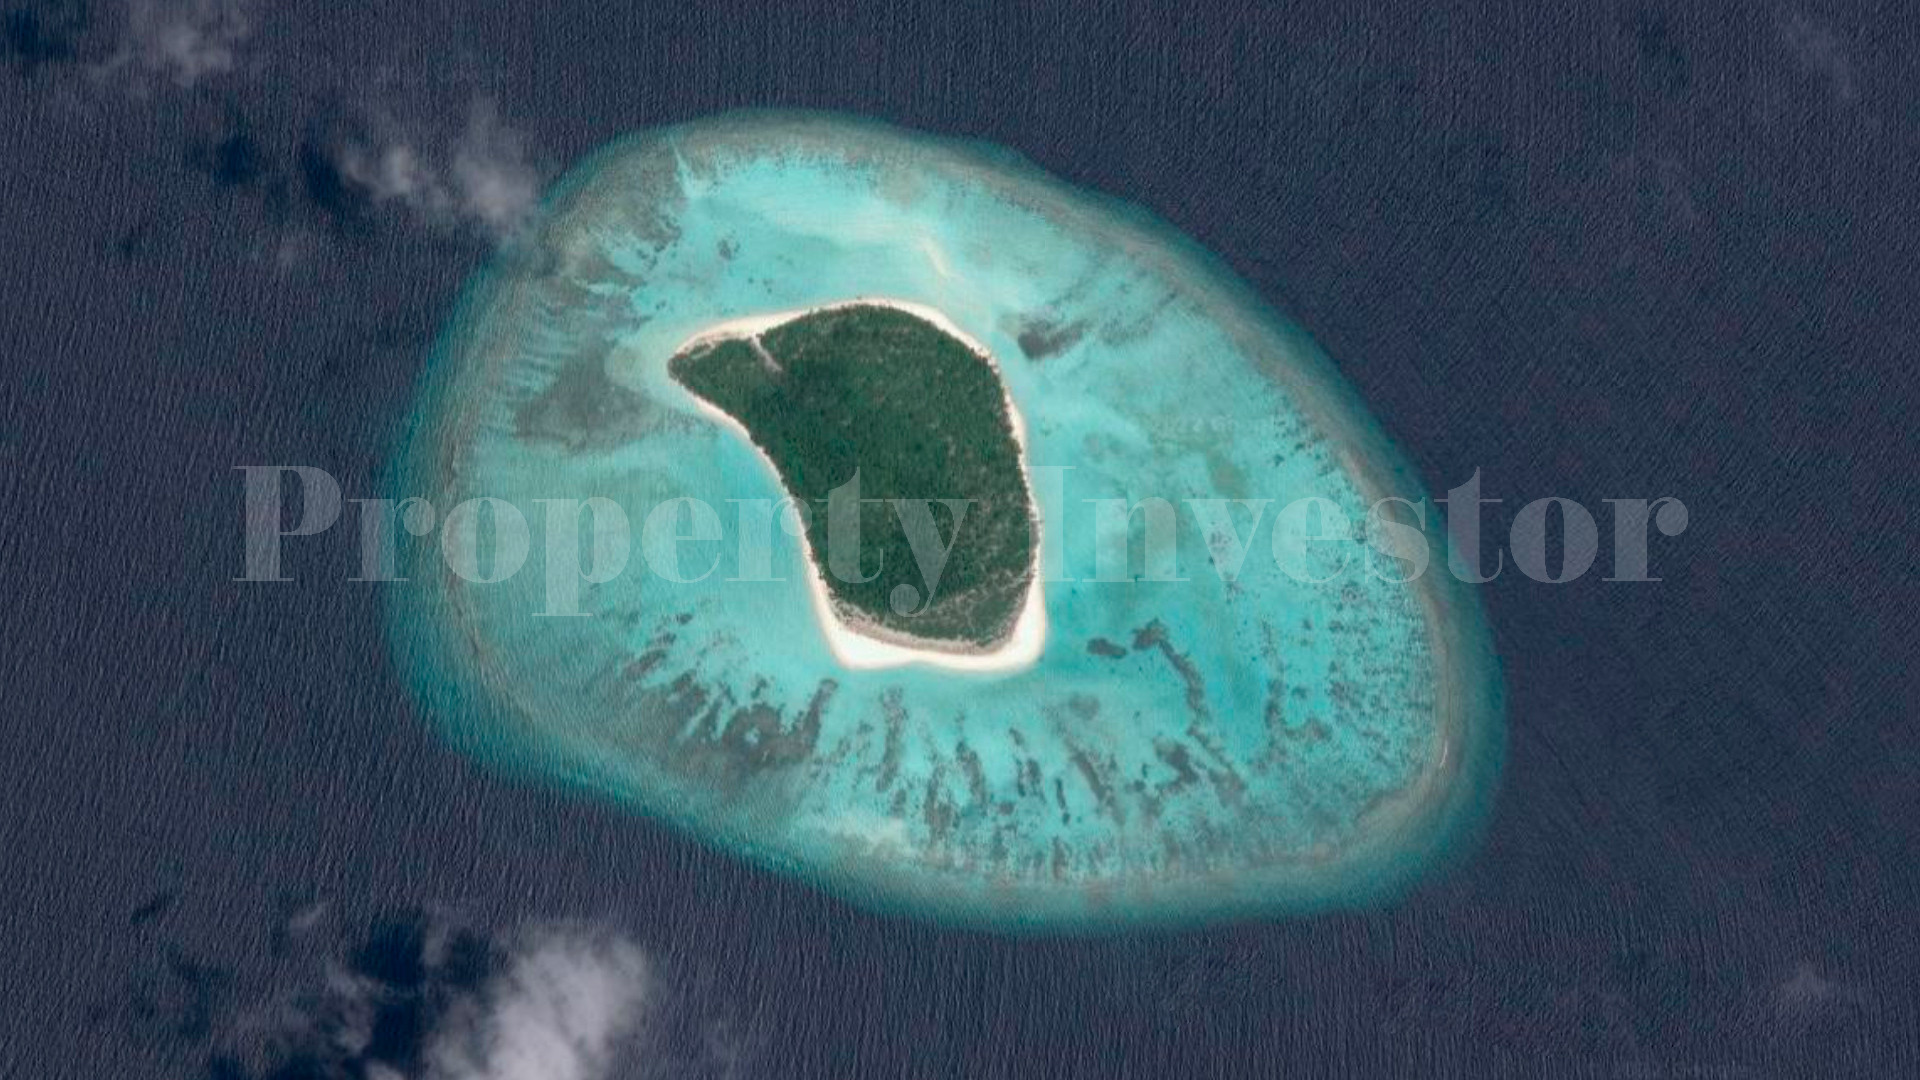 Живописный частный нетронутый остров 13 гектаров под коммерческое развитие на Мальдивах